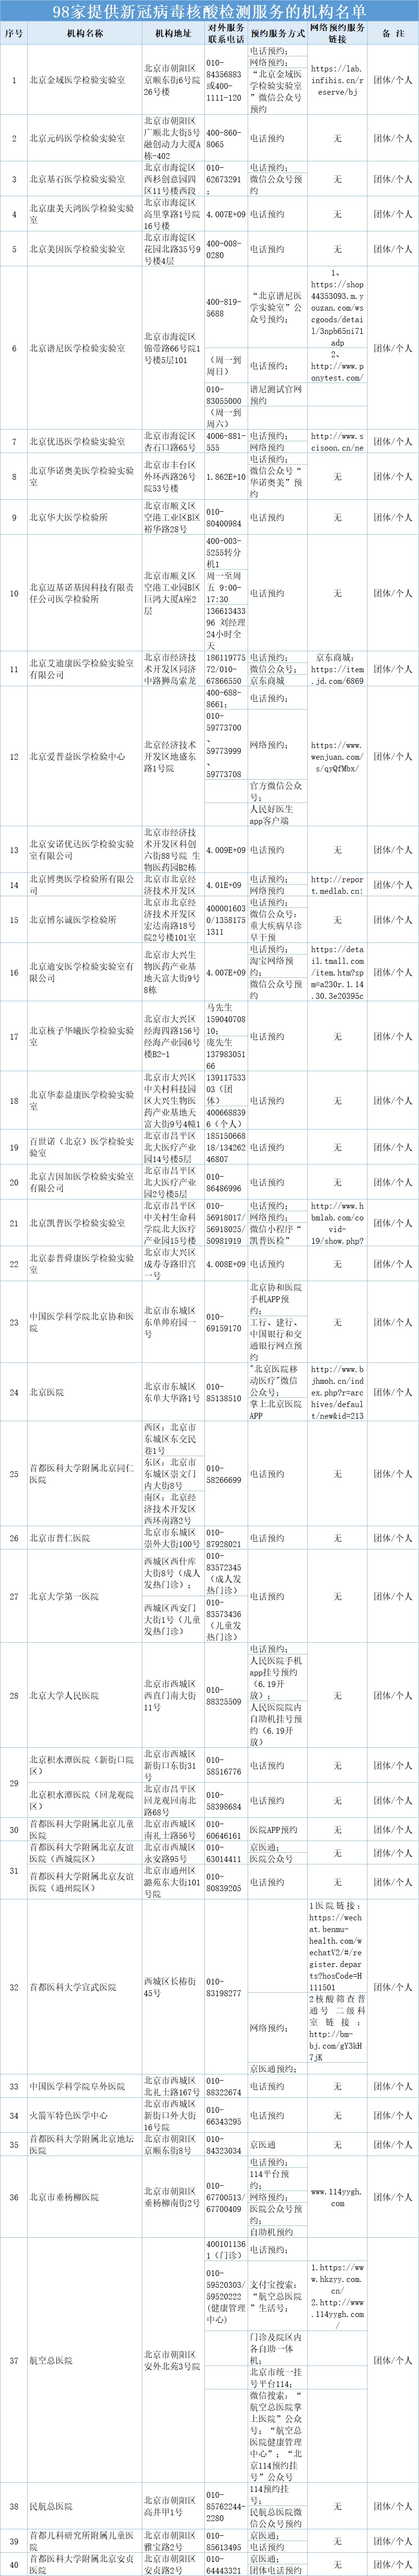 北京又新增31家具备核酸检测能力的医疗卫生机构